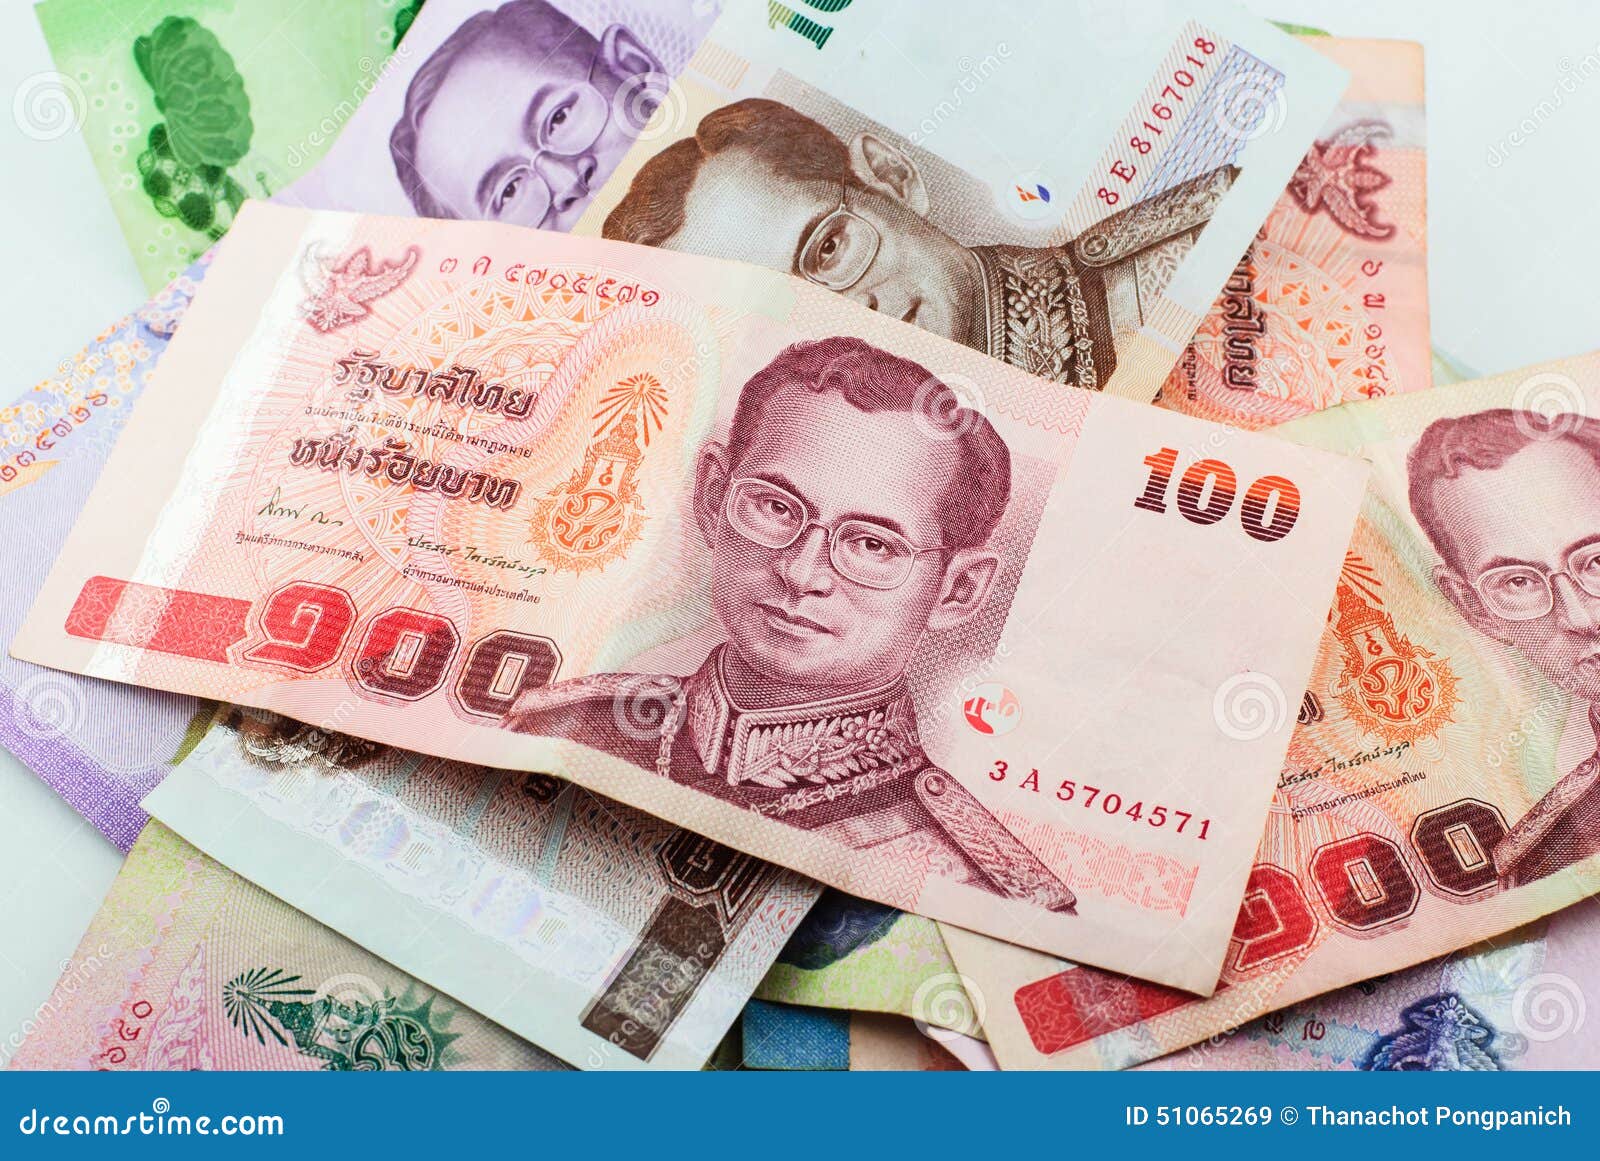 泰铢纸币背景. 全球金融危机概念. 一千铢钞票的背景. 几千泰铢 库存照片 - 图片 包括有 背包, 商业: 223542520